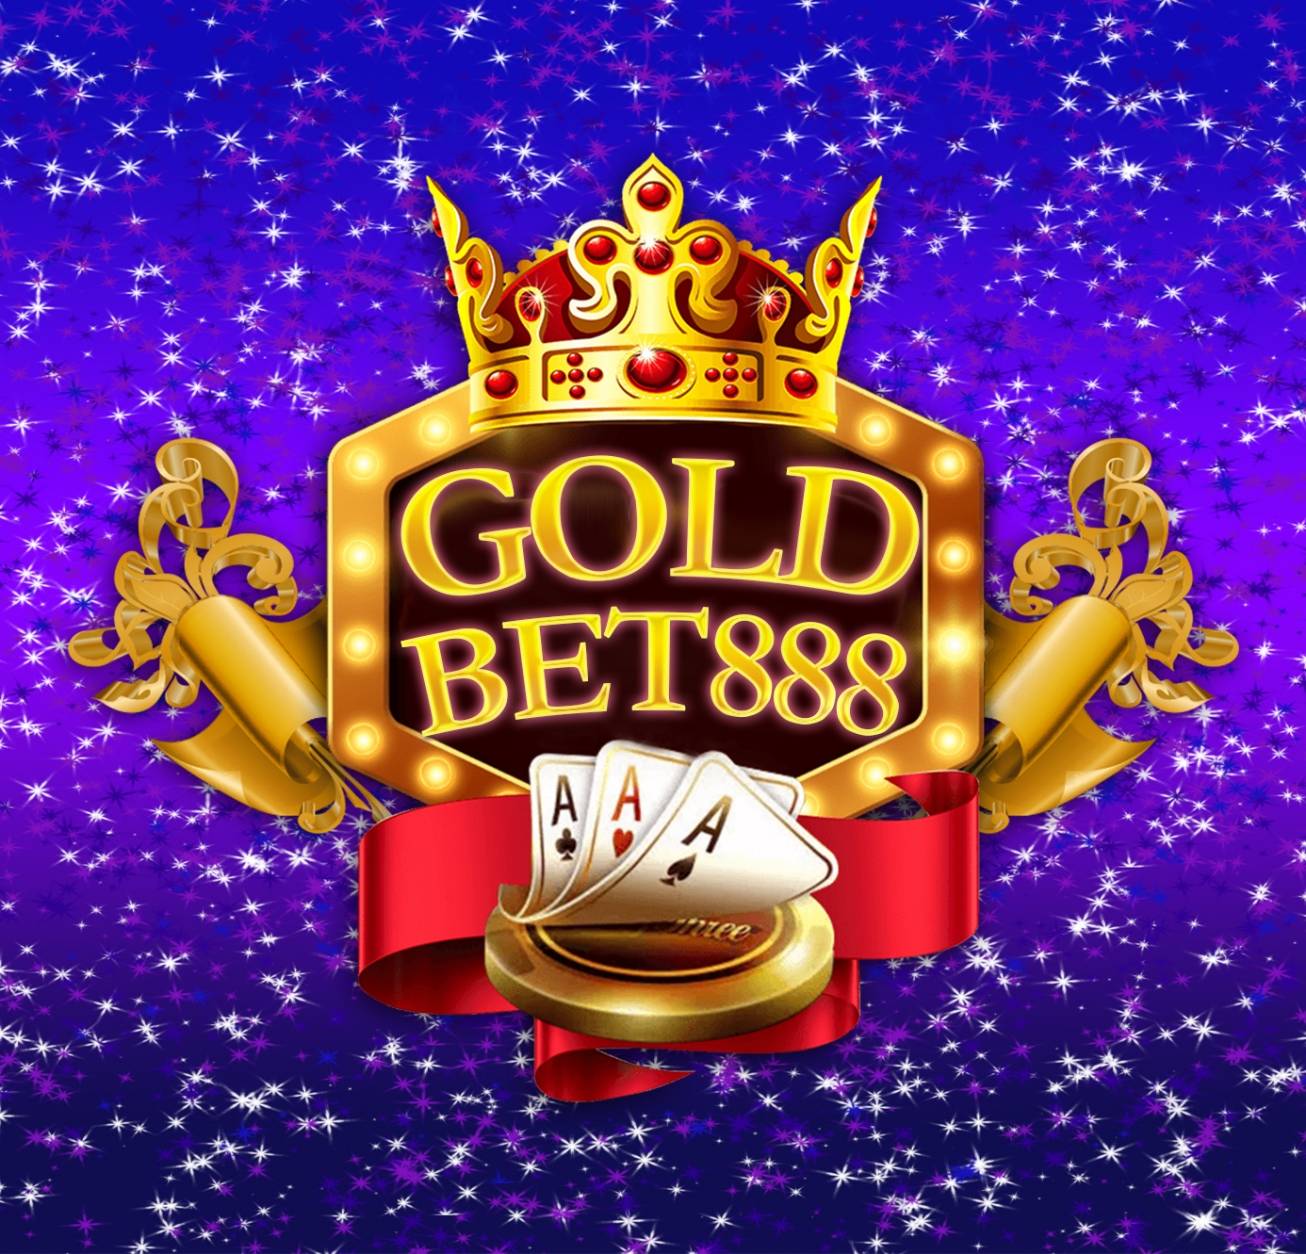 Gold Bet 888